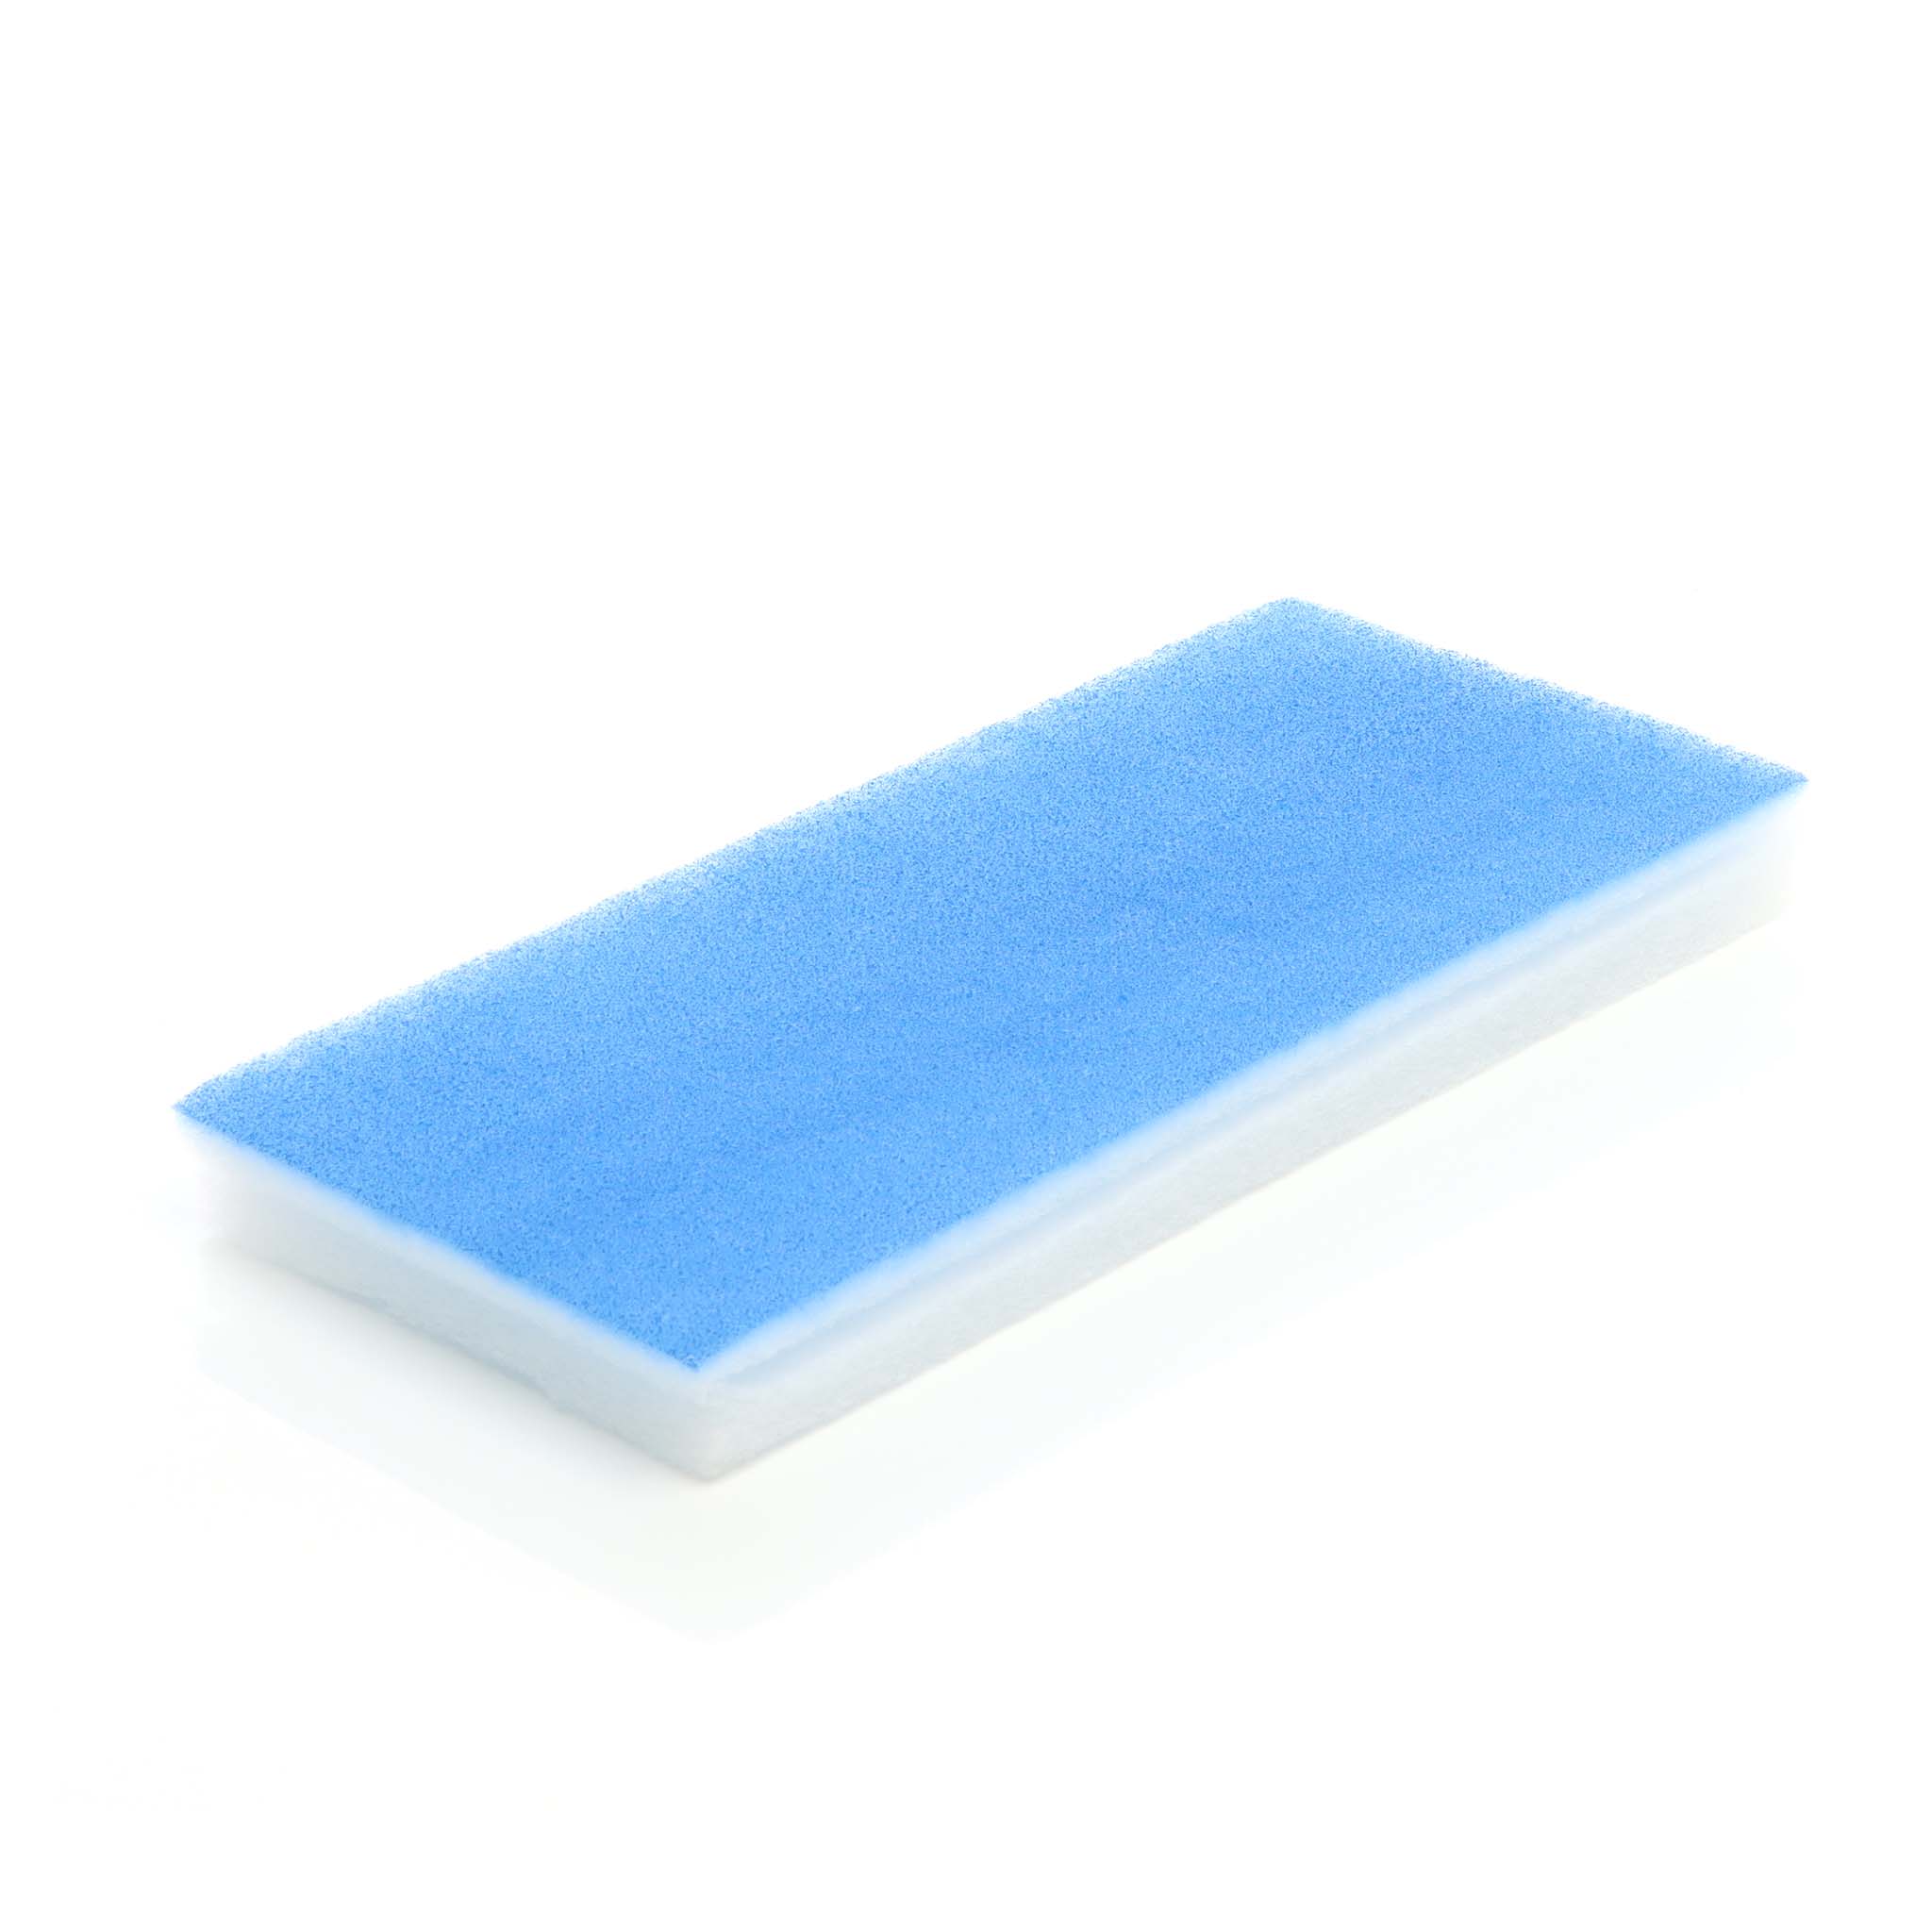 Absauganlage für Airbrush - Airbrushkabine - Farbnebel Absauganlage -  Filterspritzkabine - Lüfter 